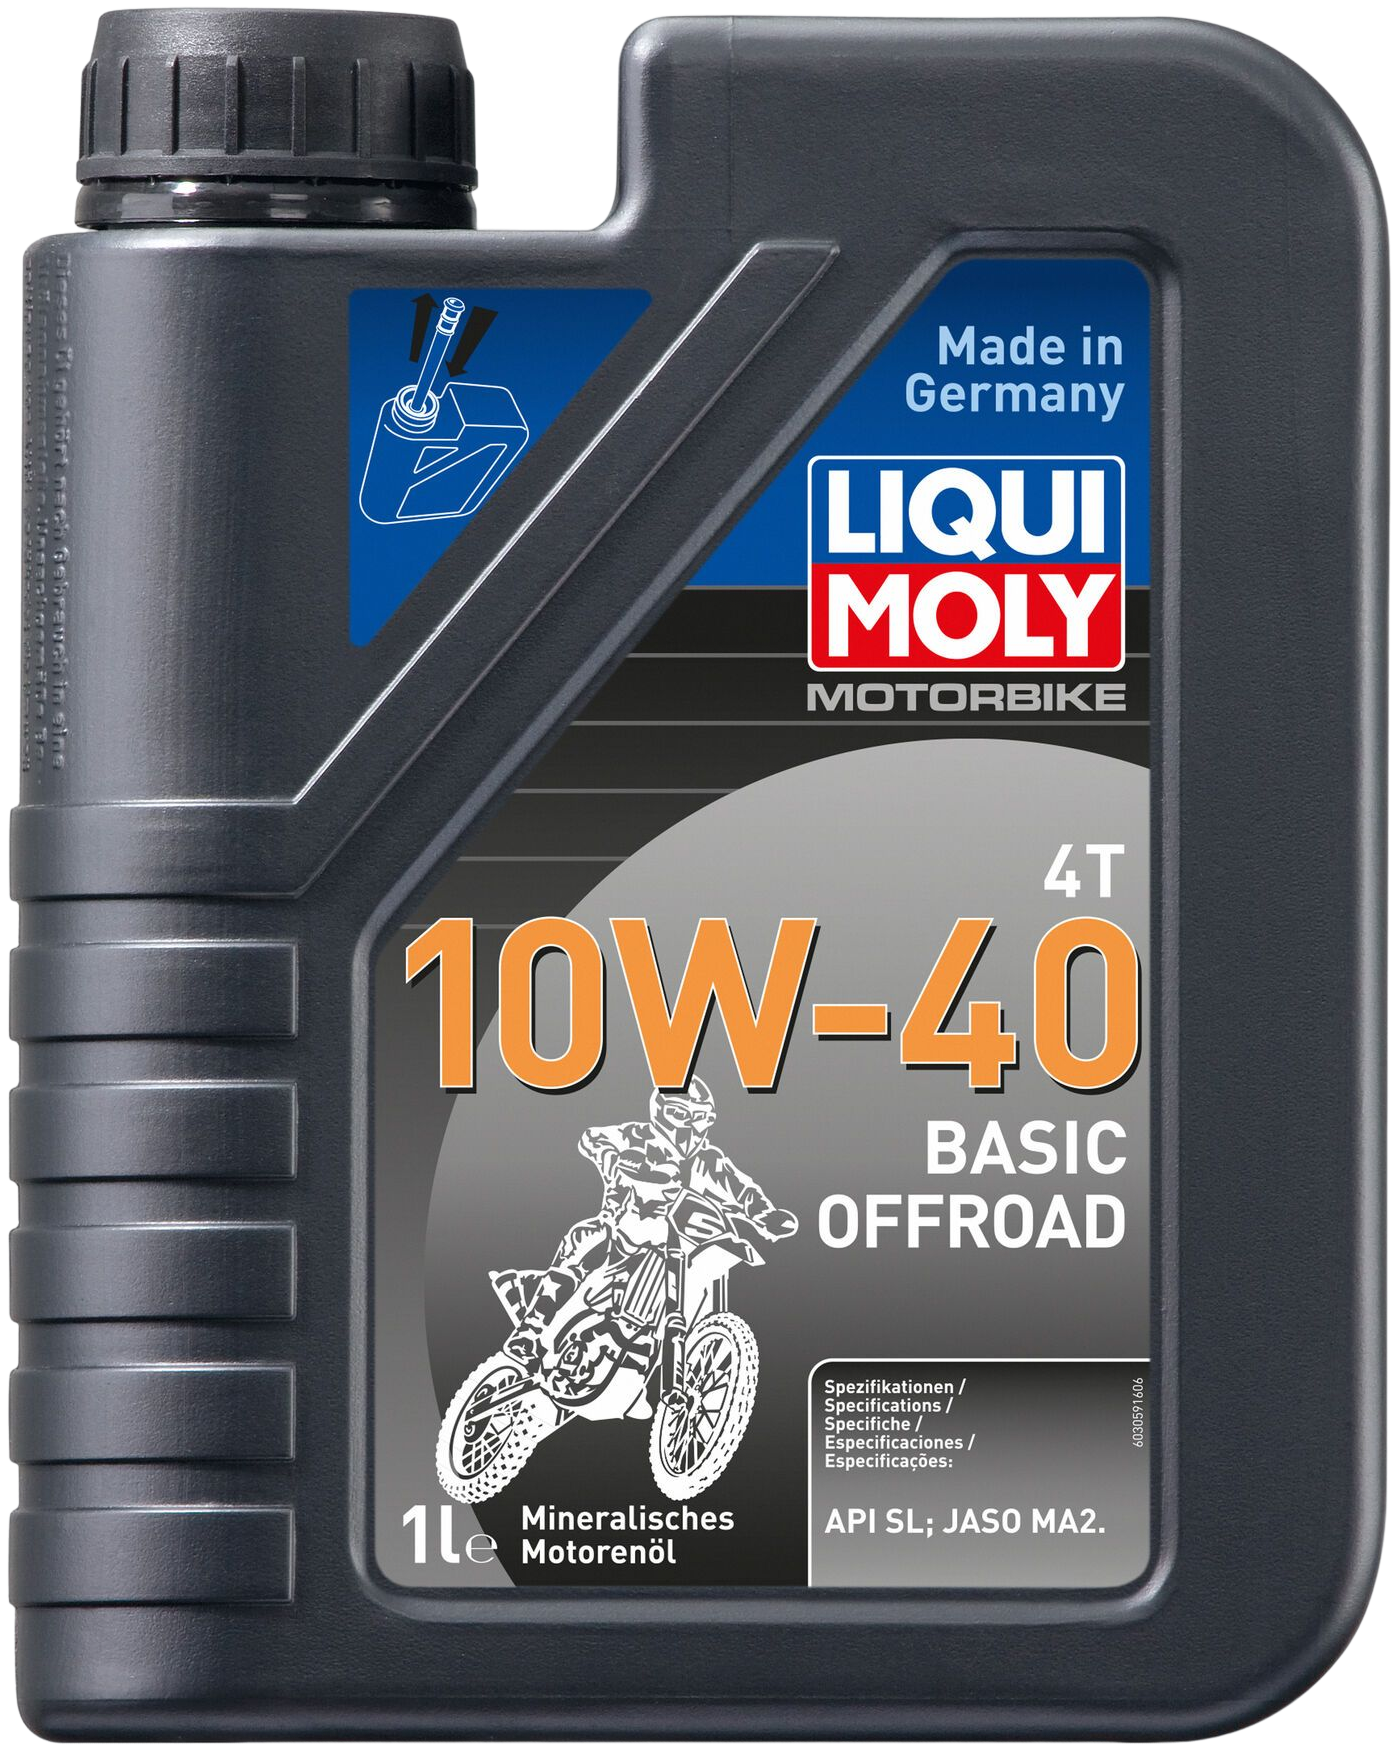 Liqui Moly Motorbike 4T 10W-40 Basic Offroad, 1 lt